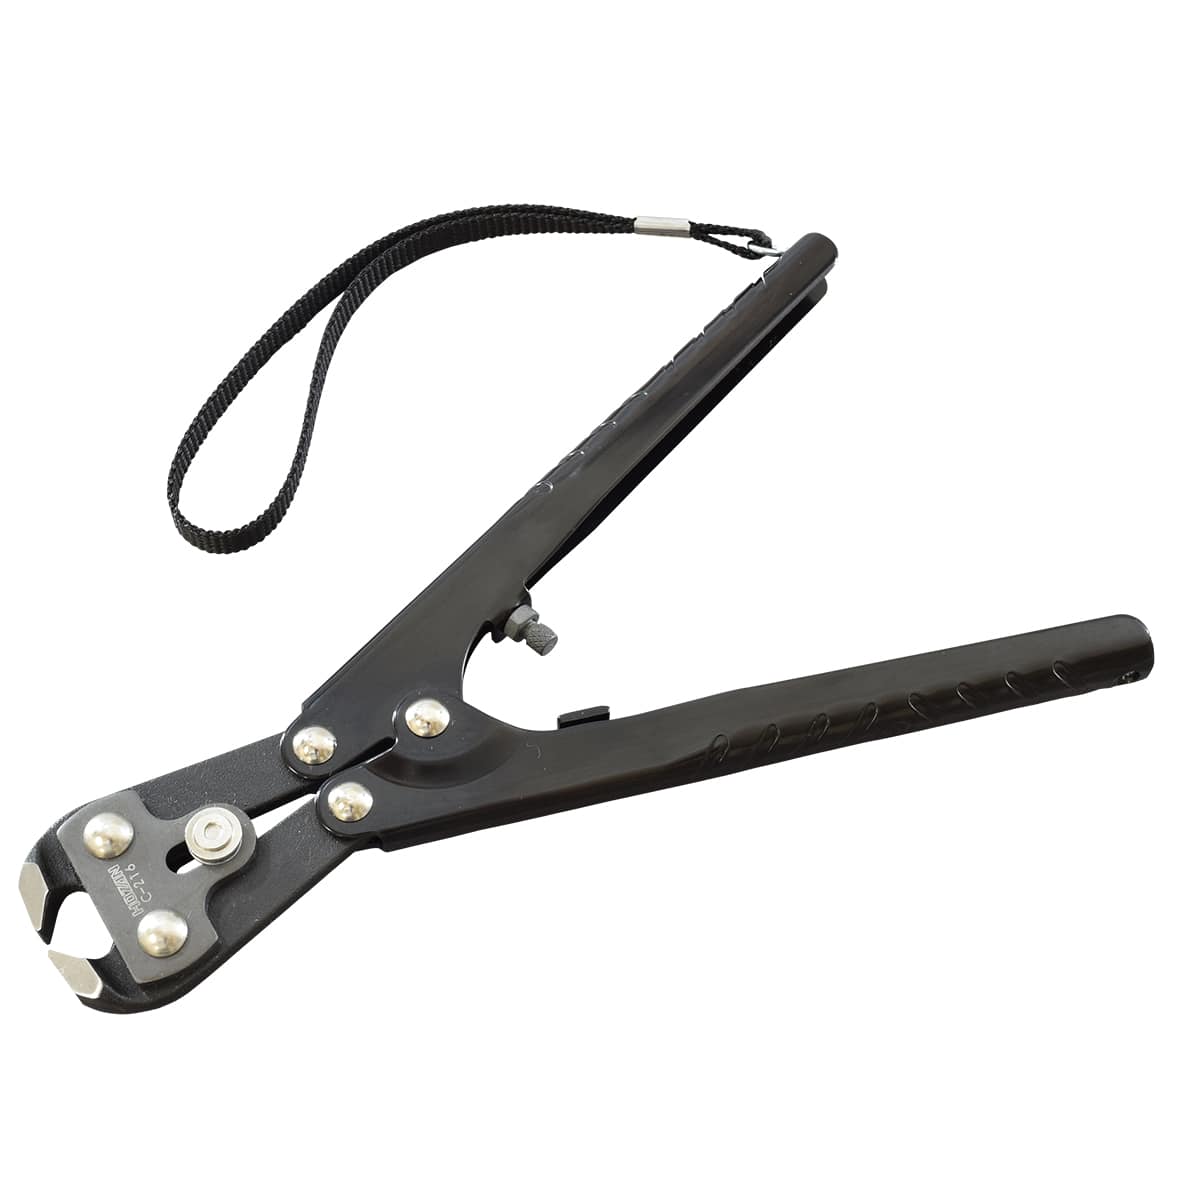 HOZAN C-216 Spoke Cutter Tool 25566 fromJAPAN for sale online 